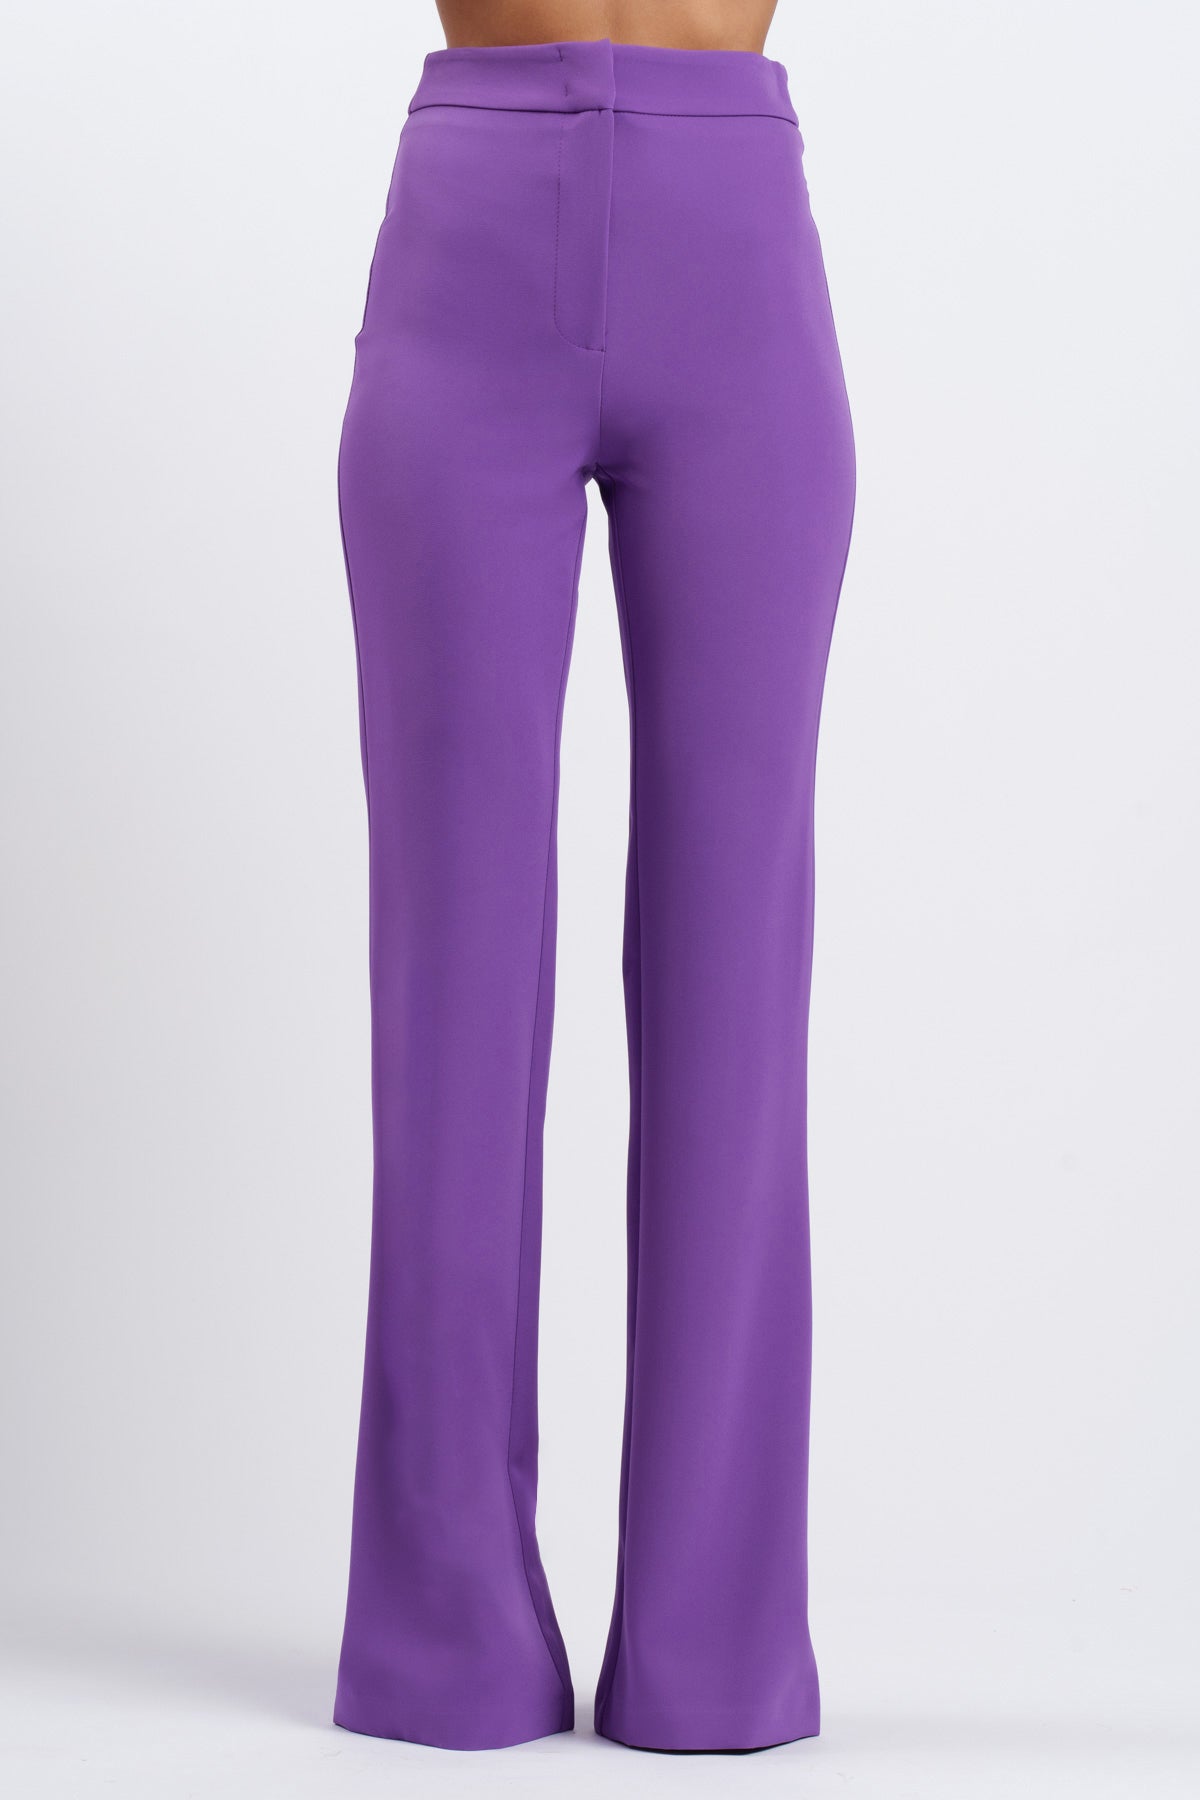 Pantalone Mezza Zampa Libra Violet